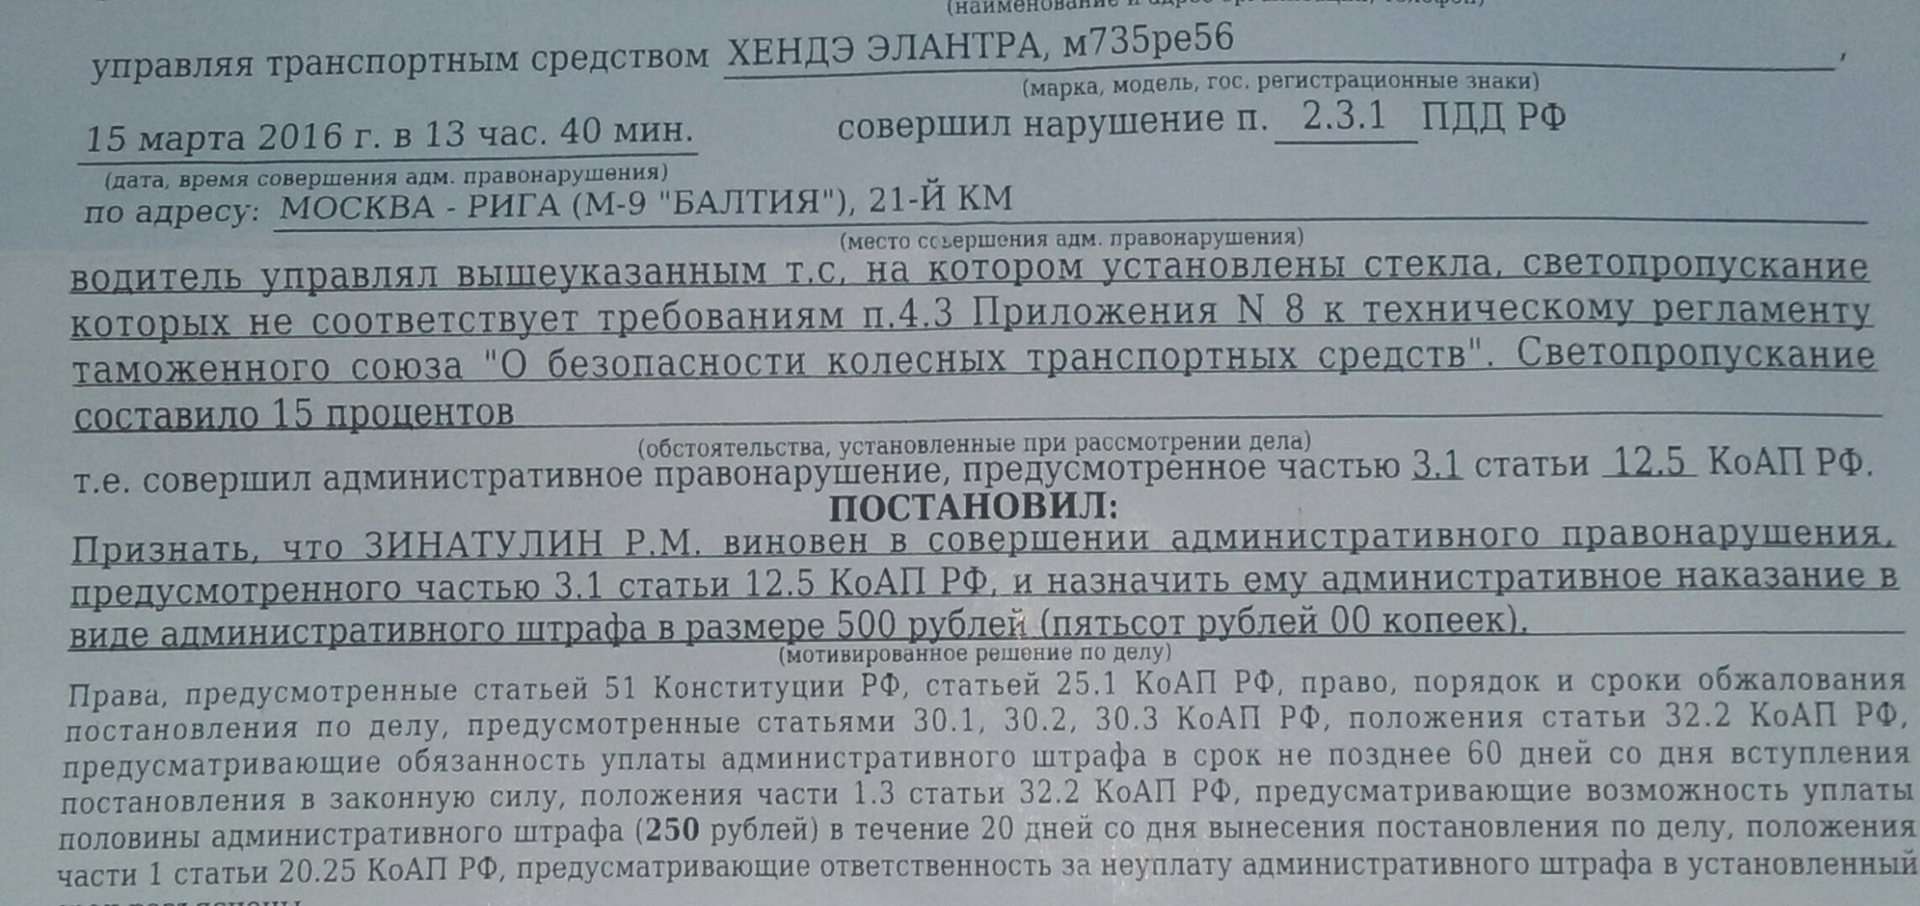 Административный штраф 500 рублей